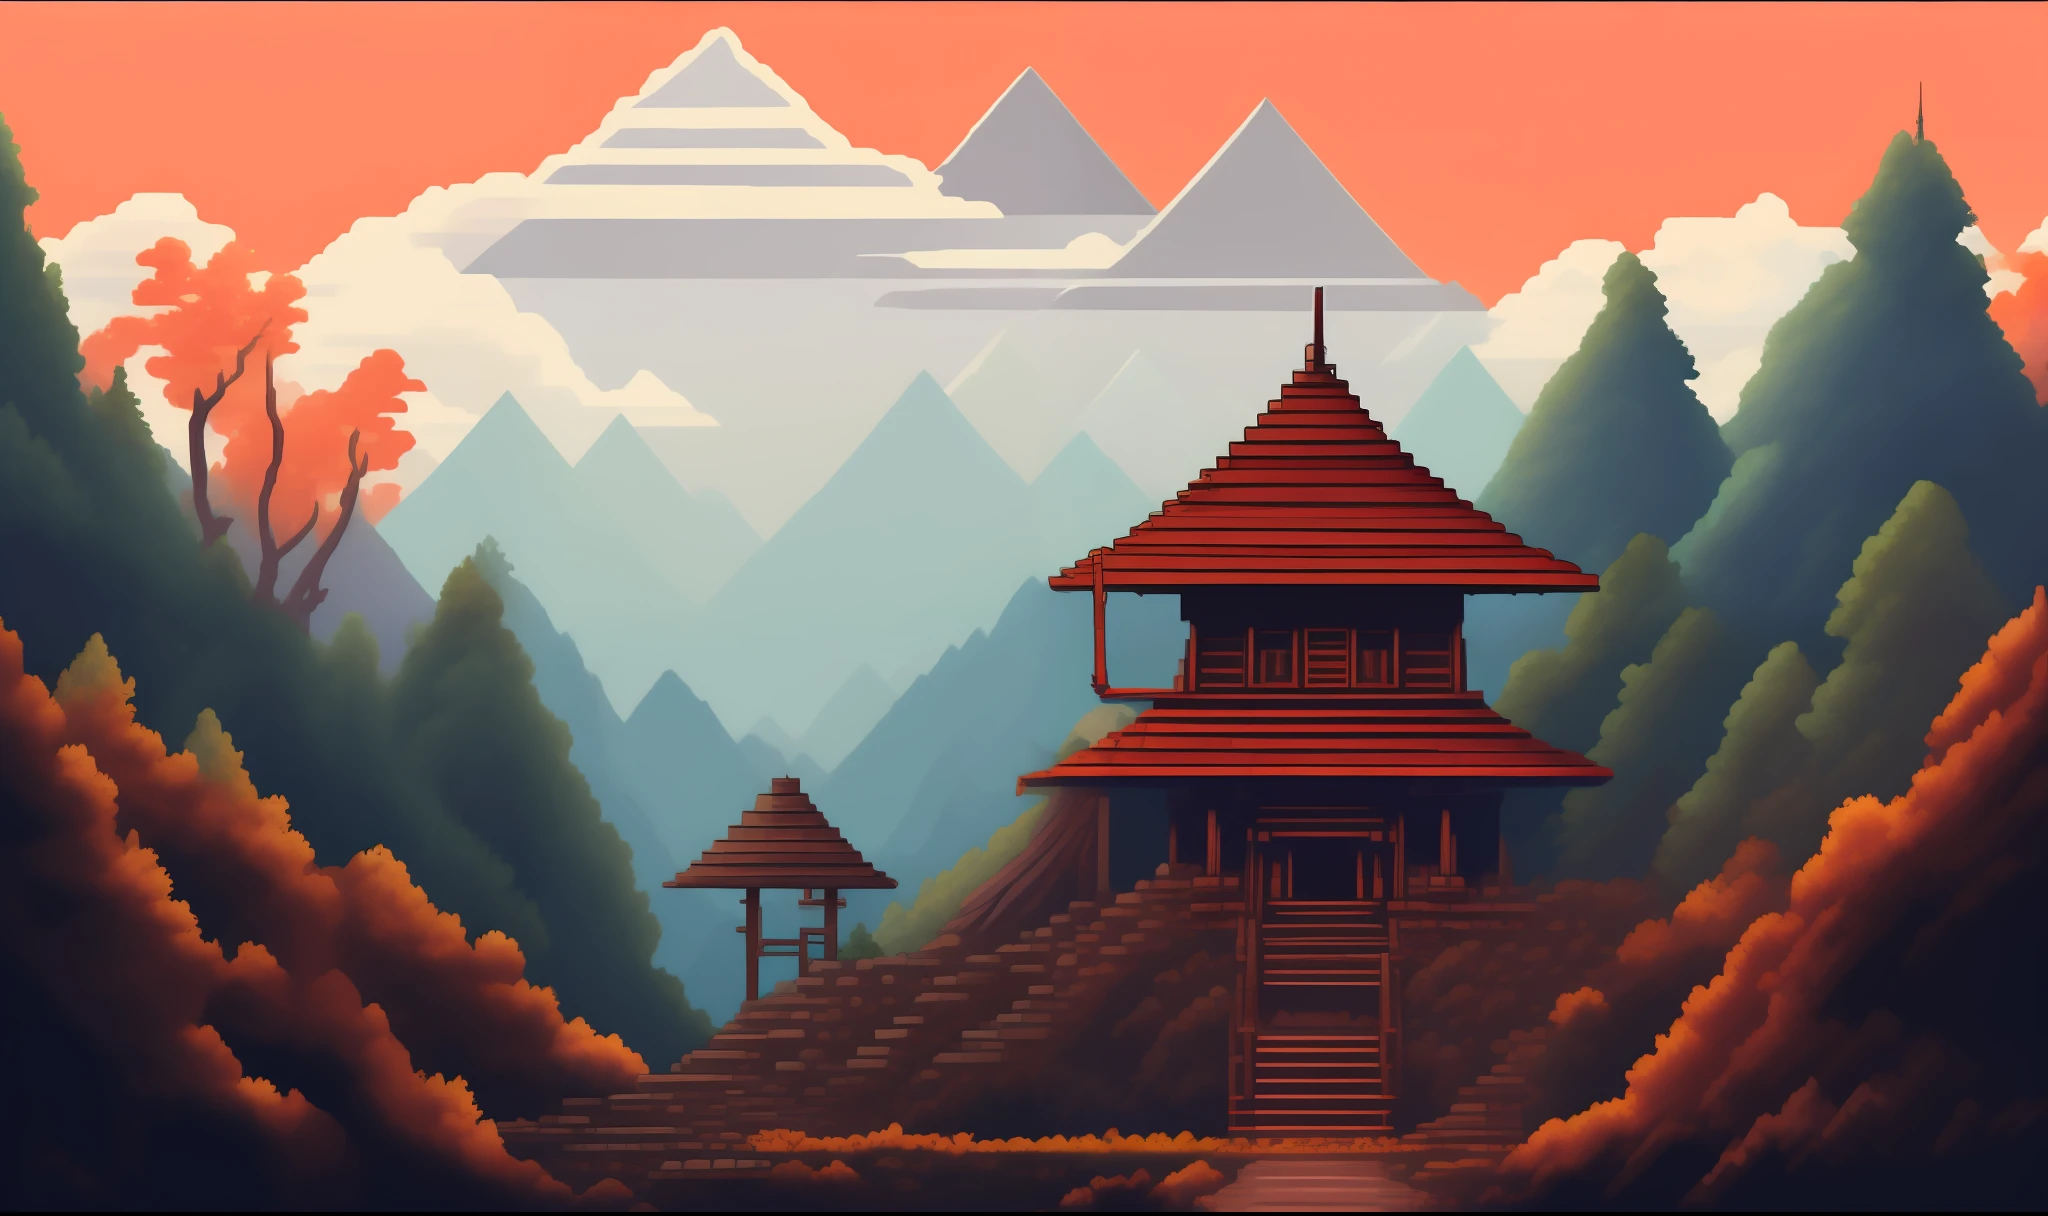 صورة غلاف لعبة فيديو Pixelart لساموراي يقف أمام معبد ياباني مع وجود جبال في المسافة, أسلوب بكسل آرت